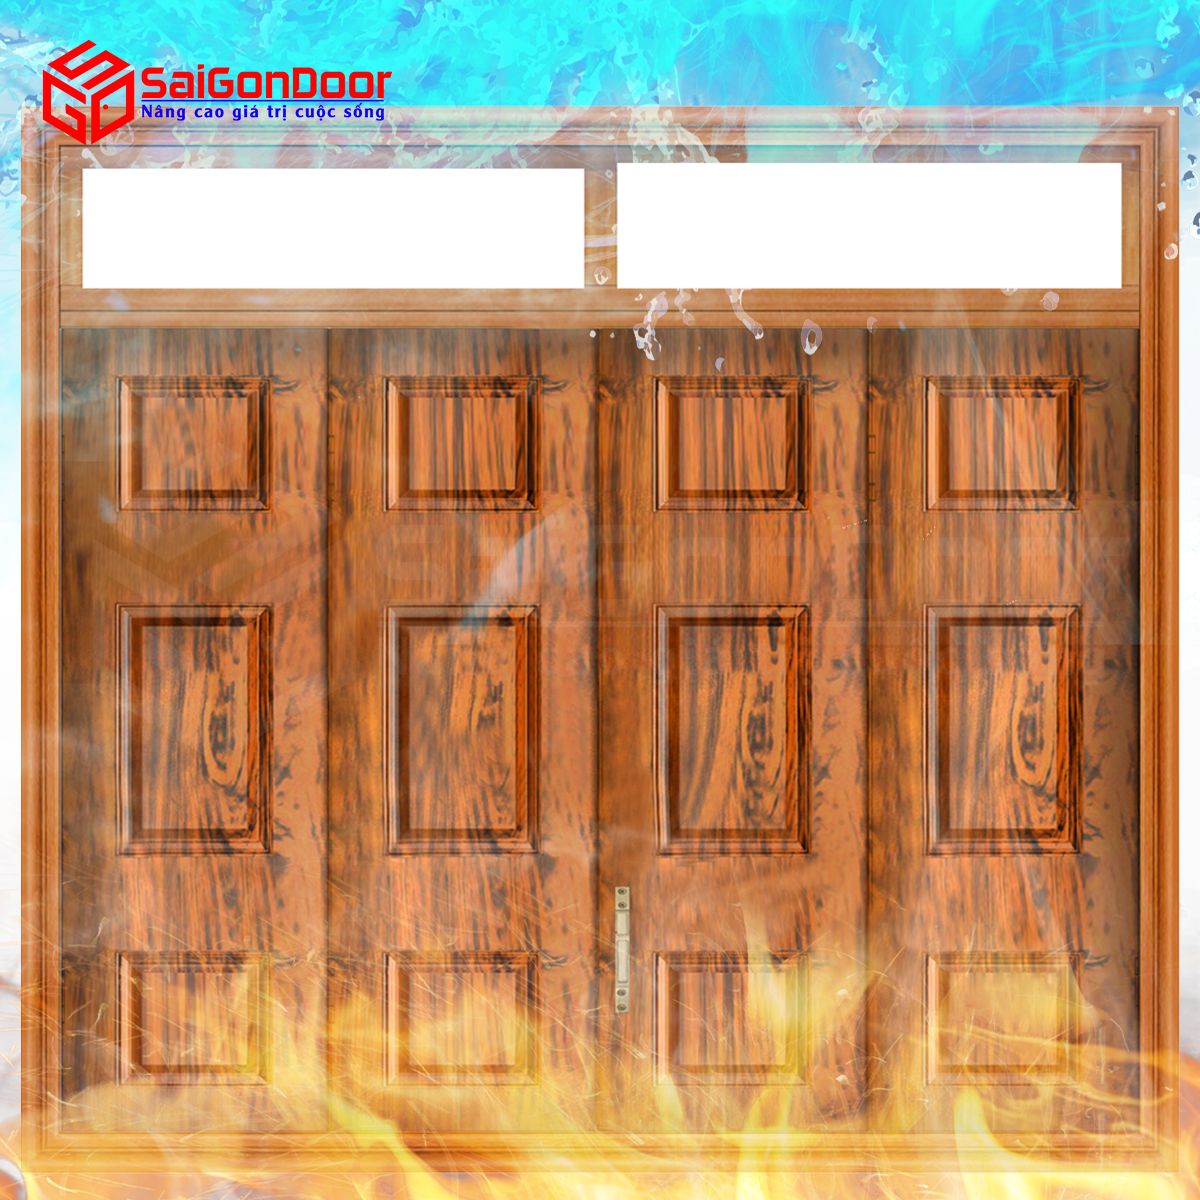 Cửa chống cháy SaiGonDoor cho chất lượng tốt đắp ứng tiêu chuẩn ngăn cháy đã được kiểm định